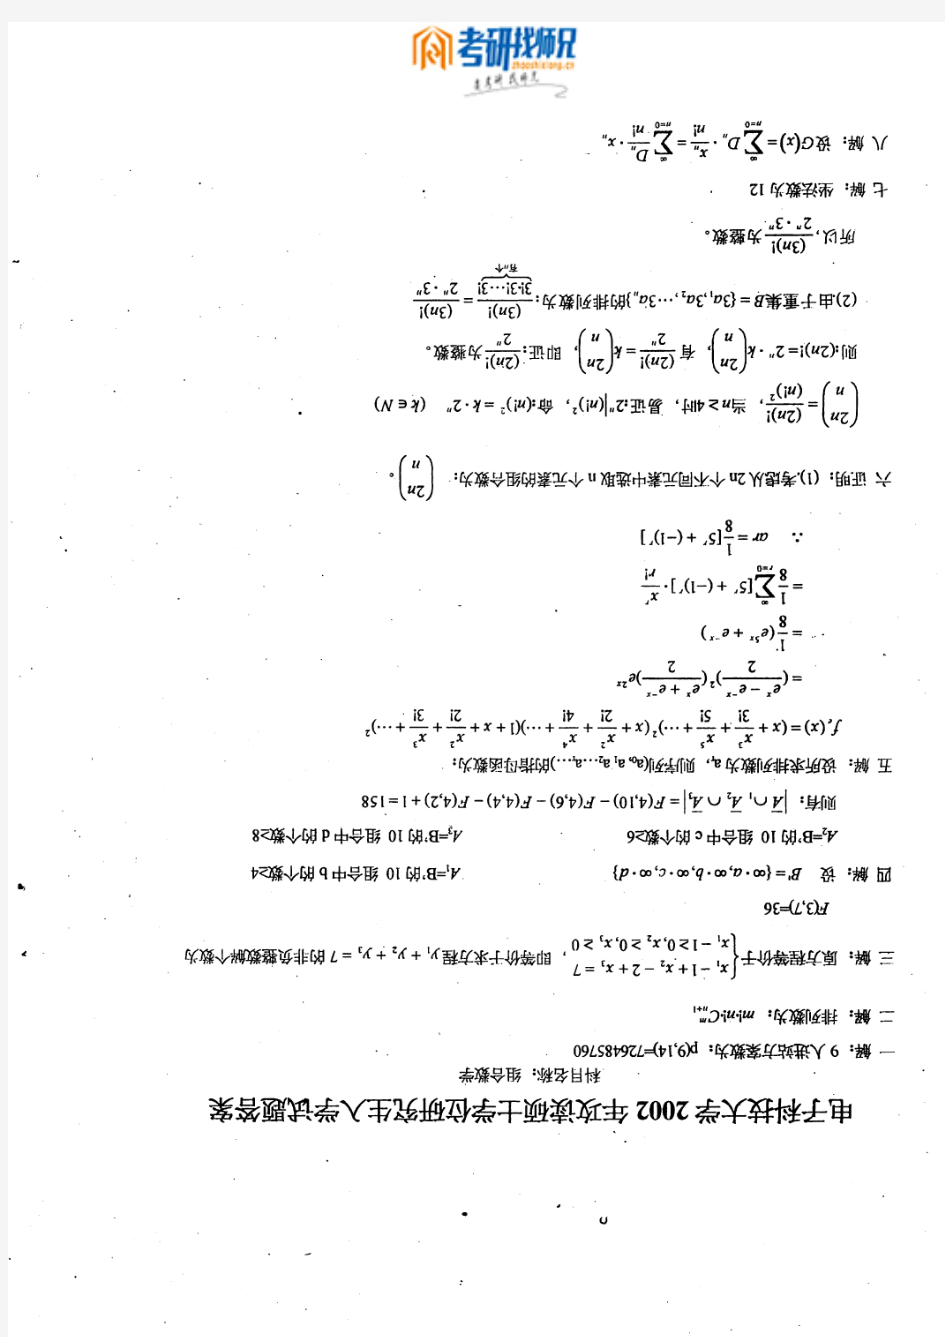 电子科技大学组合数学-2002答案